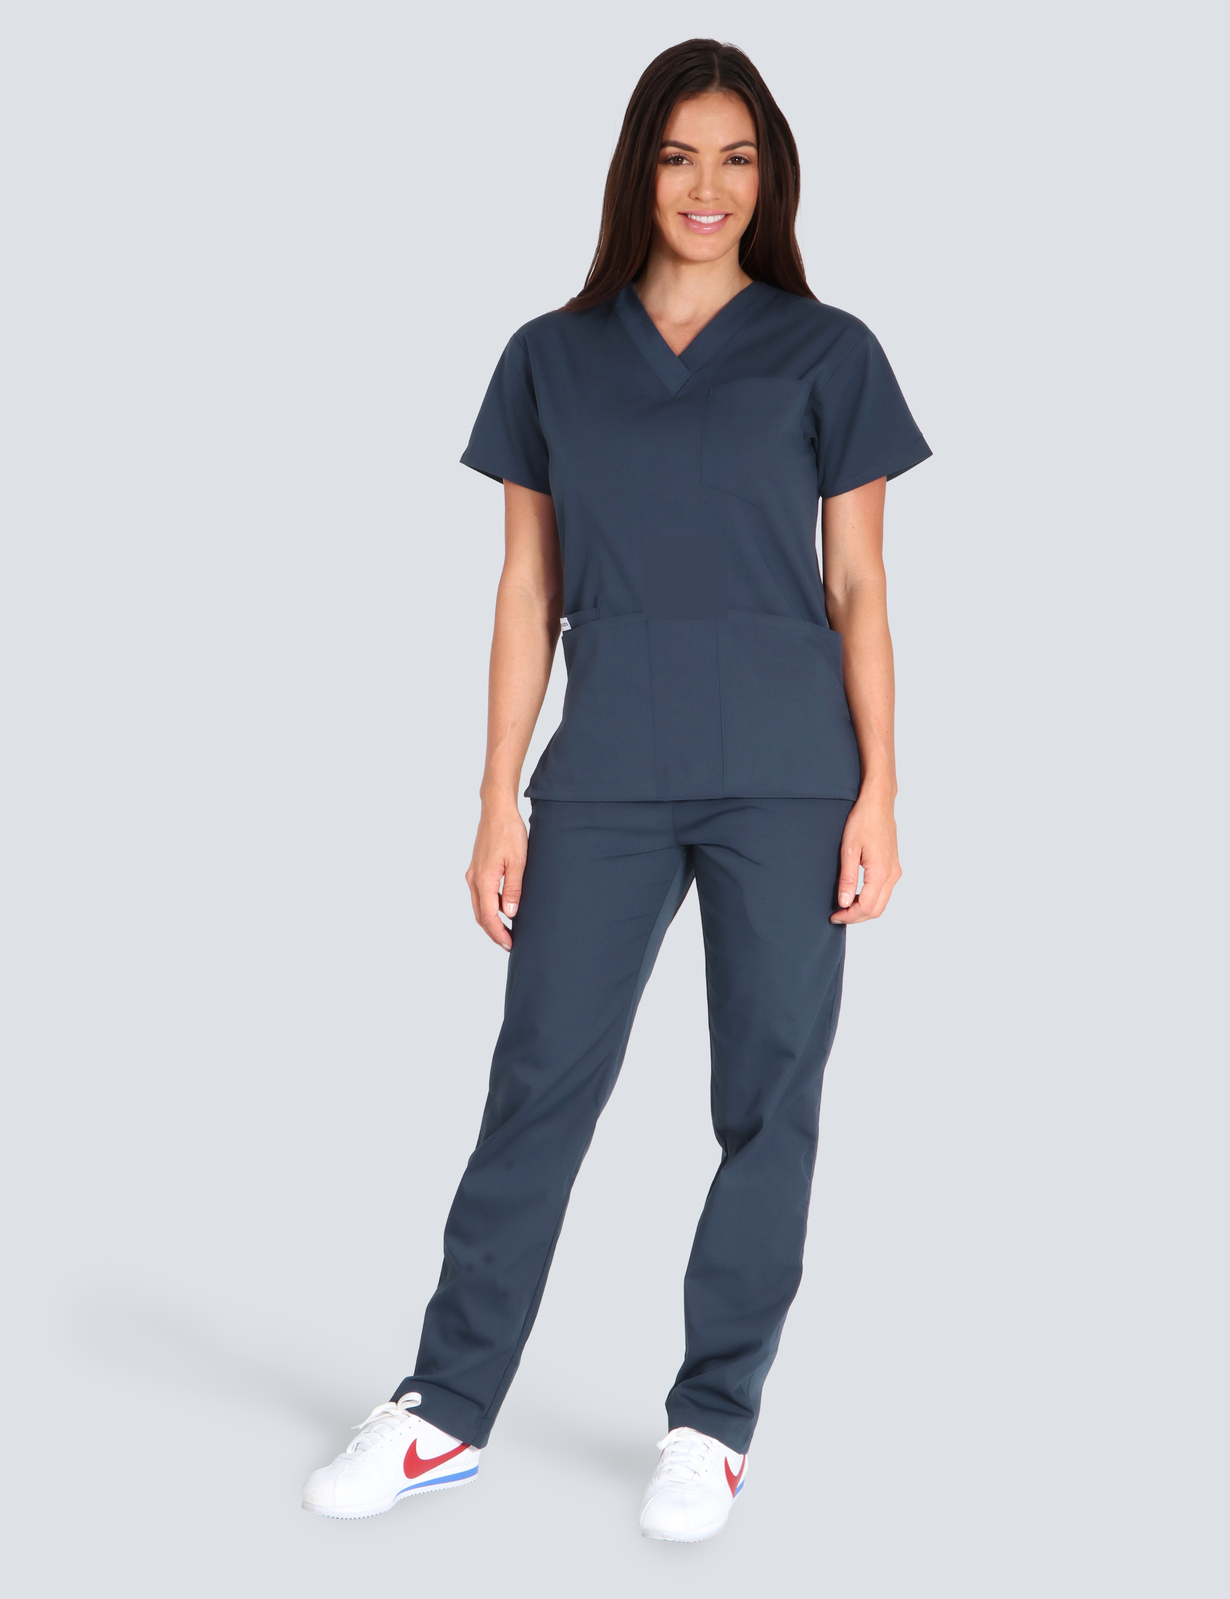 Registered Nurse Uniform Set Bundle (4 Pocket Top and Cargo Pants in Red incl Logos)